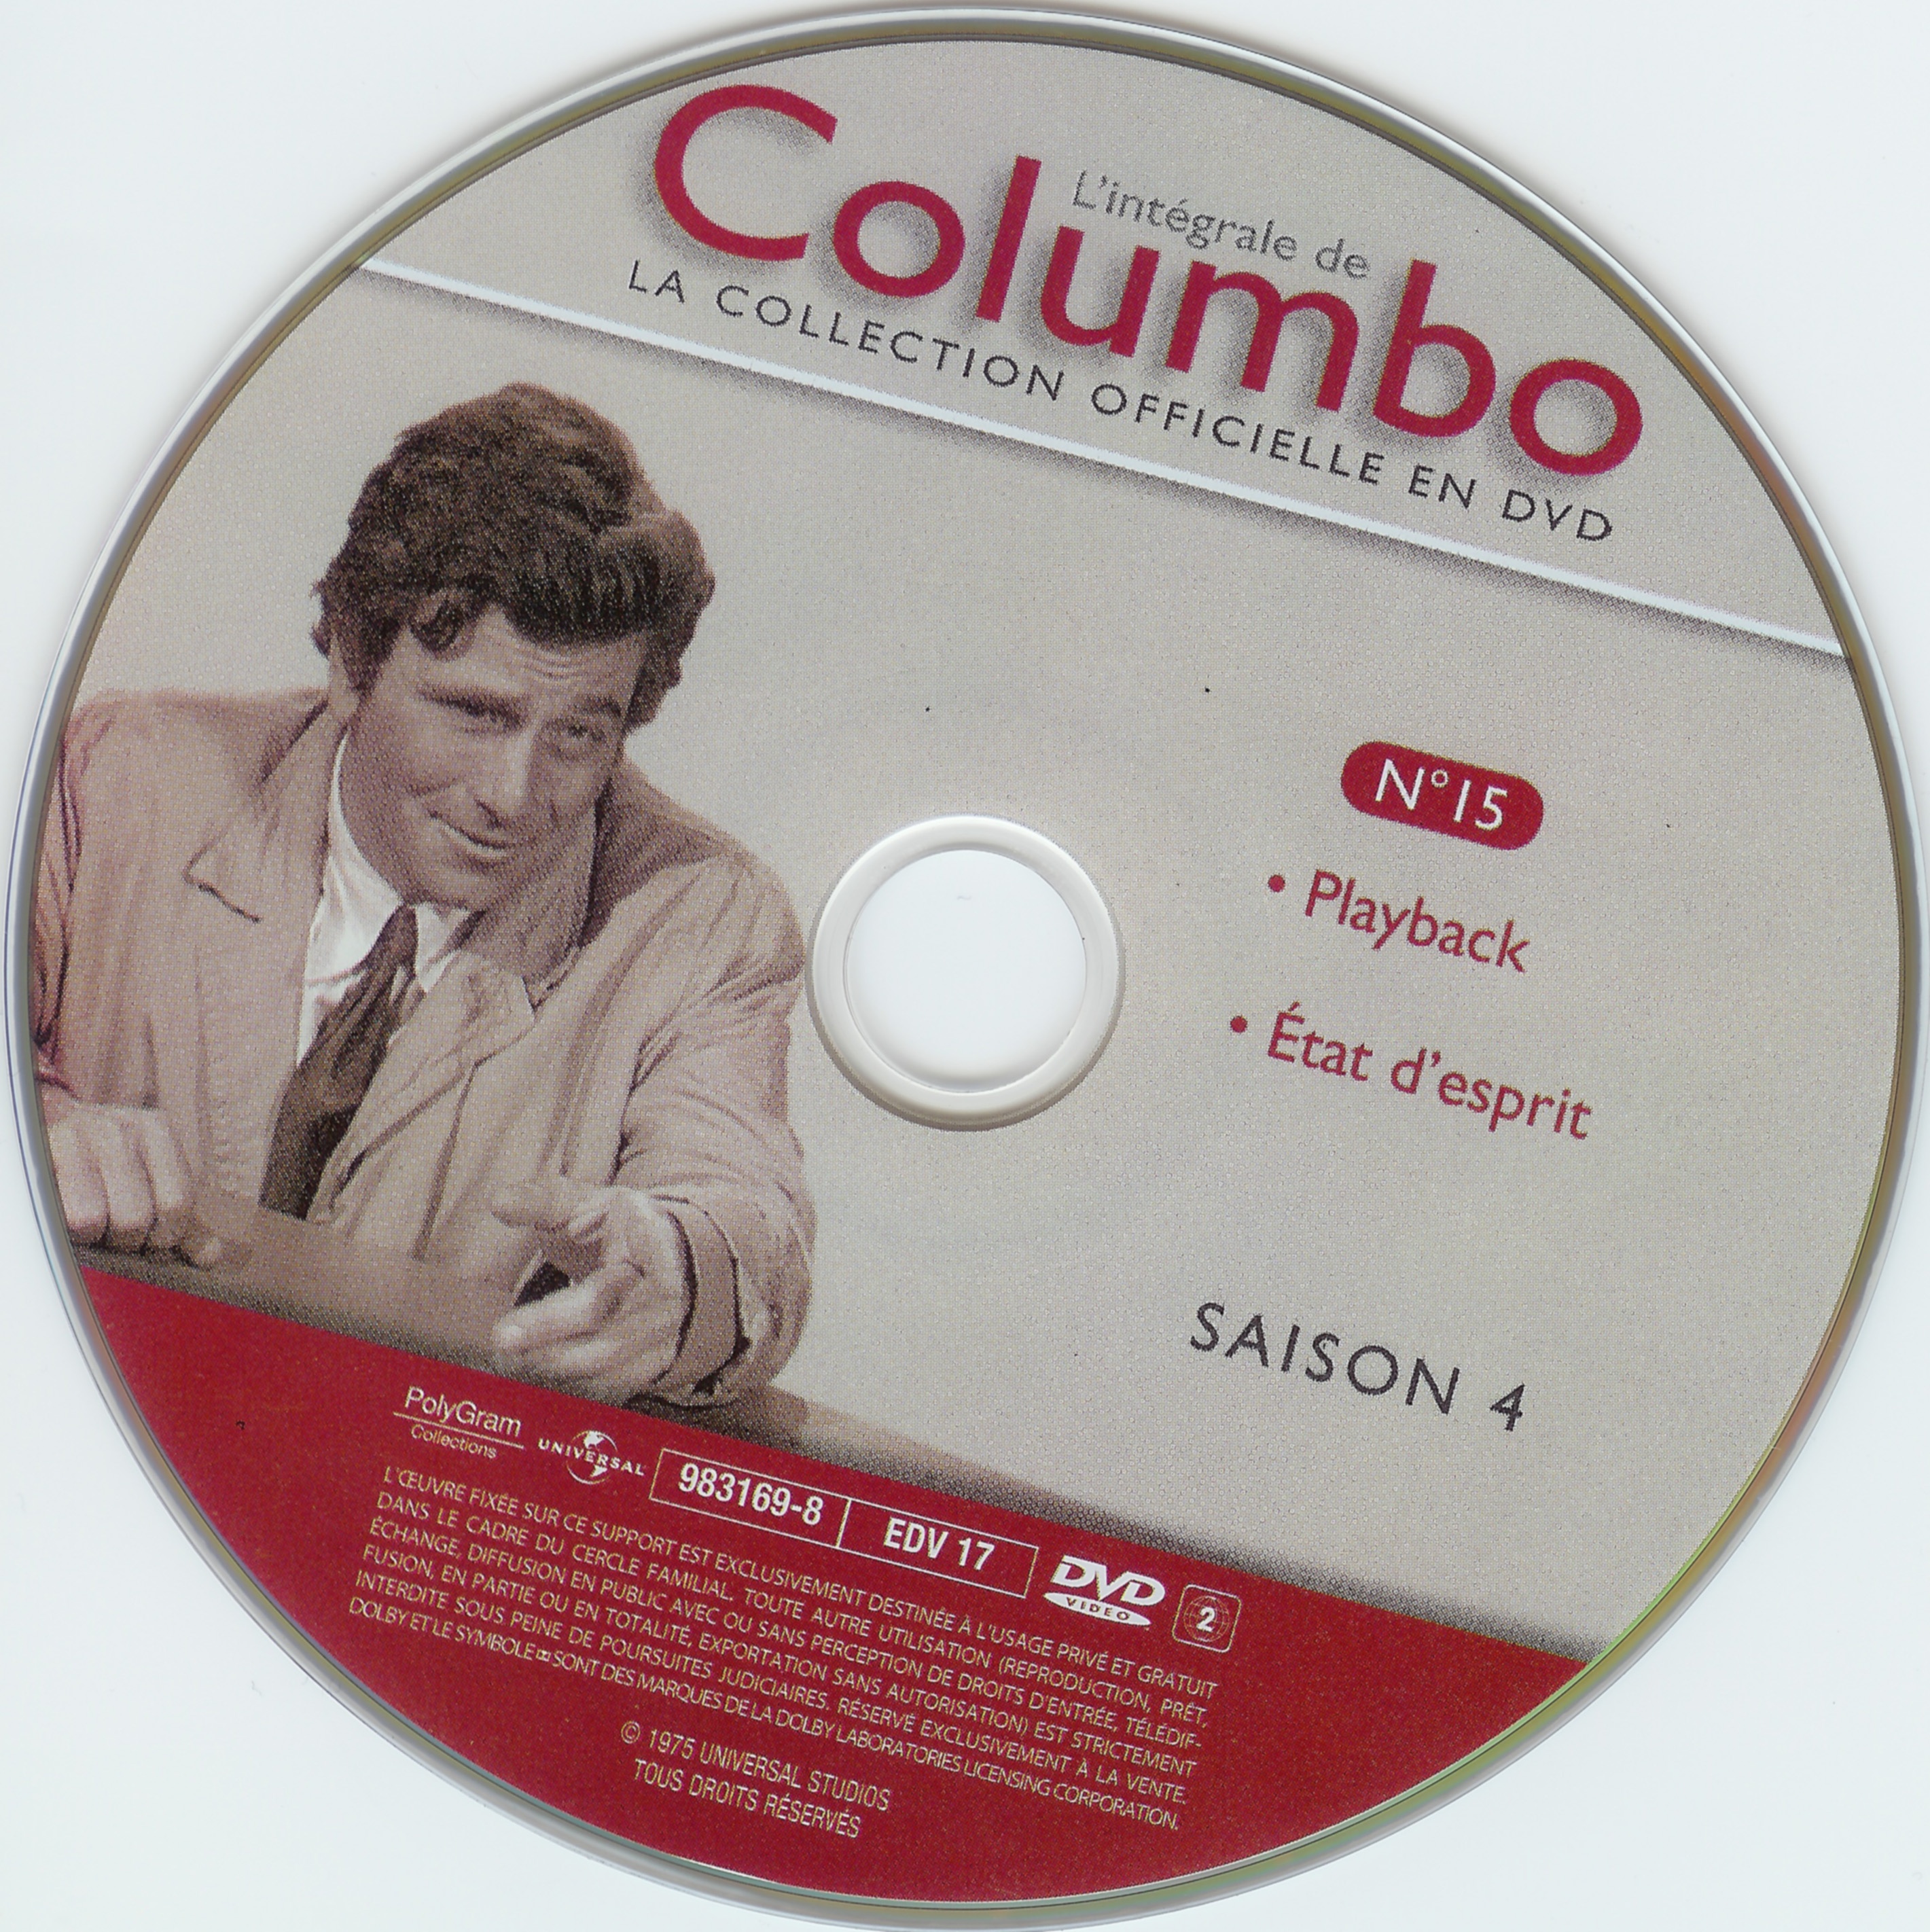 Columbo saison 4 vol 15